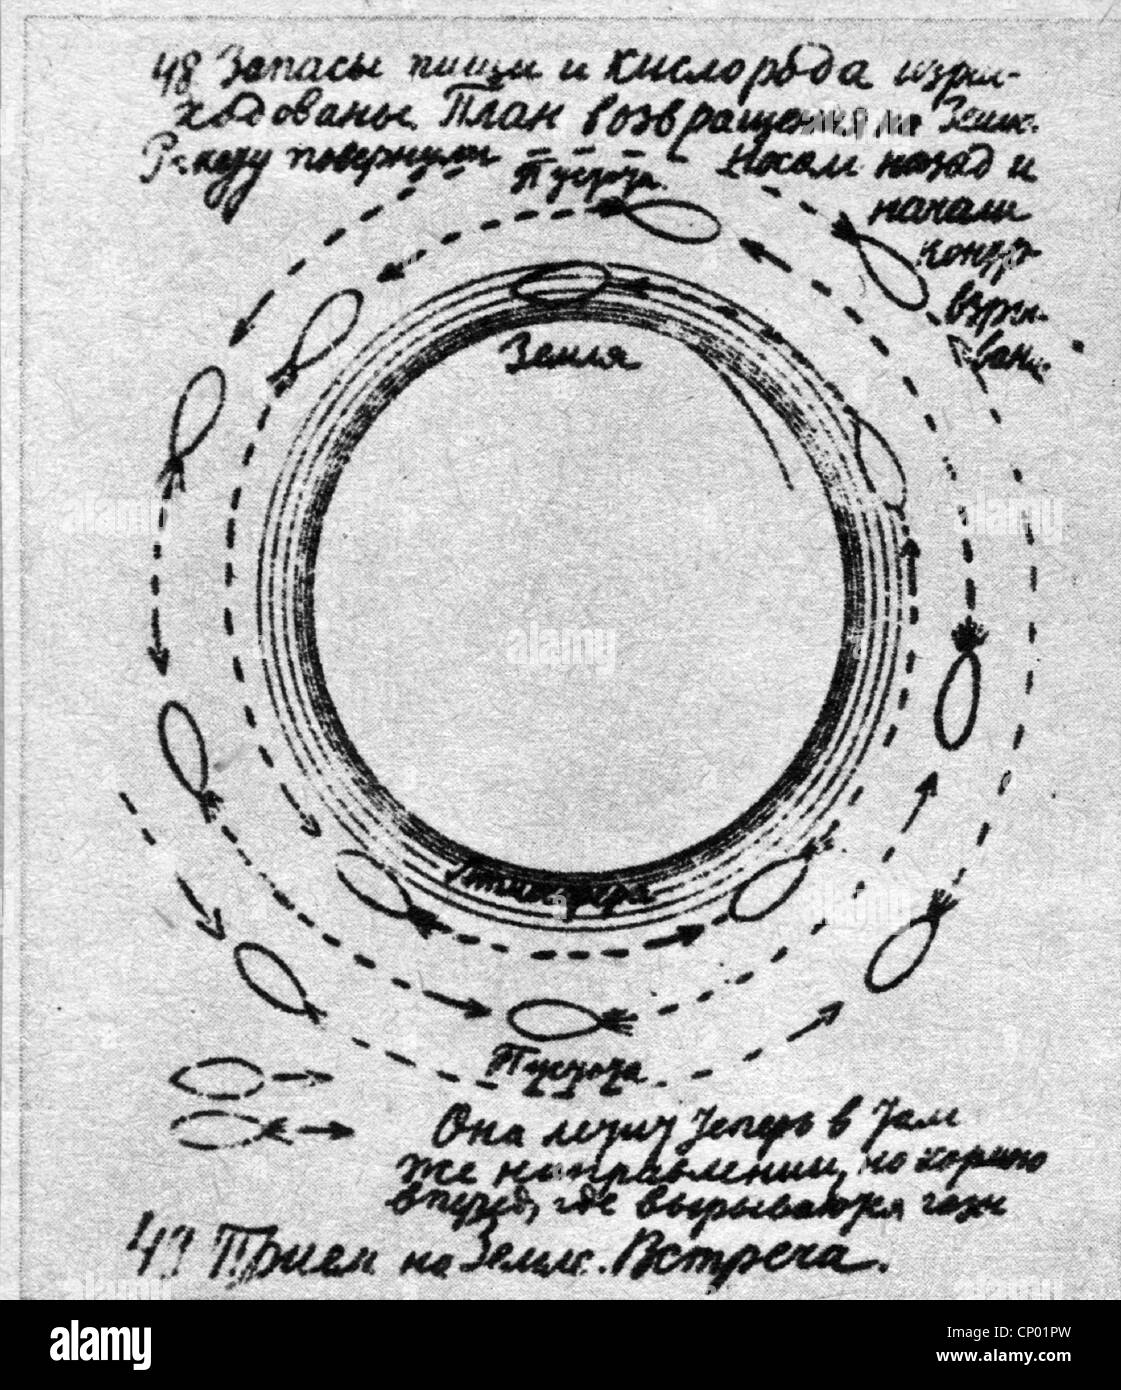 Tsiolkovskii, Konstantin Eduardovich, 17.9.1857 - 19.9.1935, physicien russe, mathématicien, page d'un de ses manuscrits, croquis d'une orbite, Banque D'Images